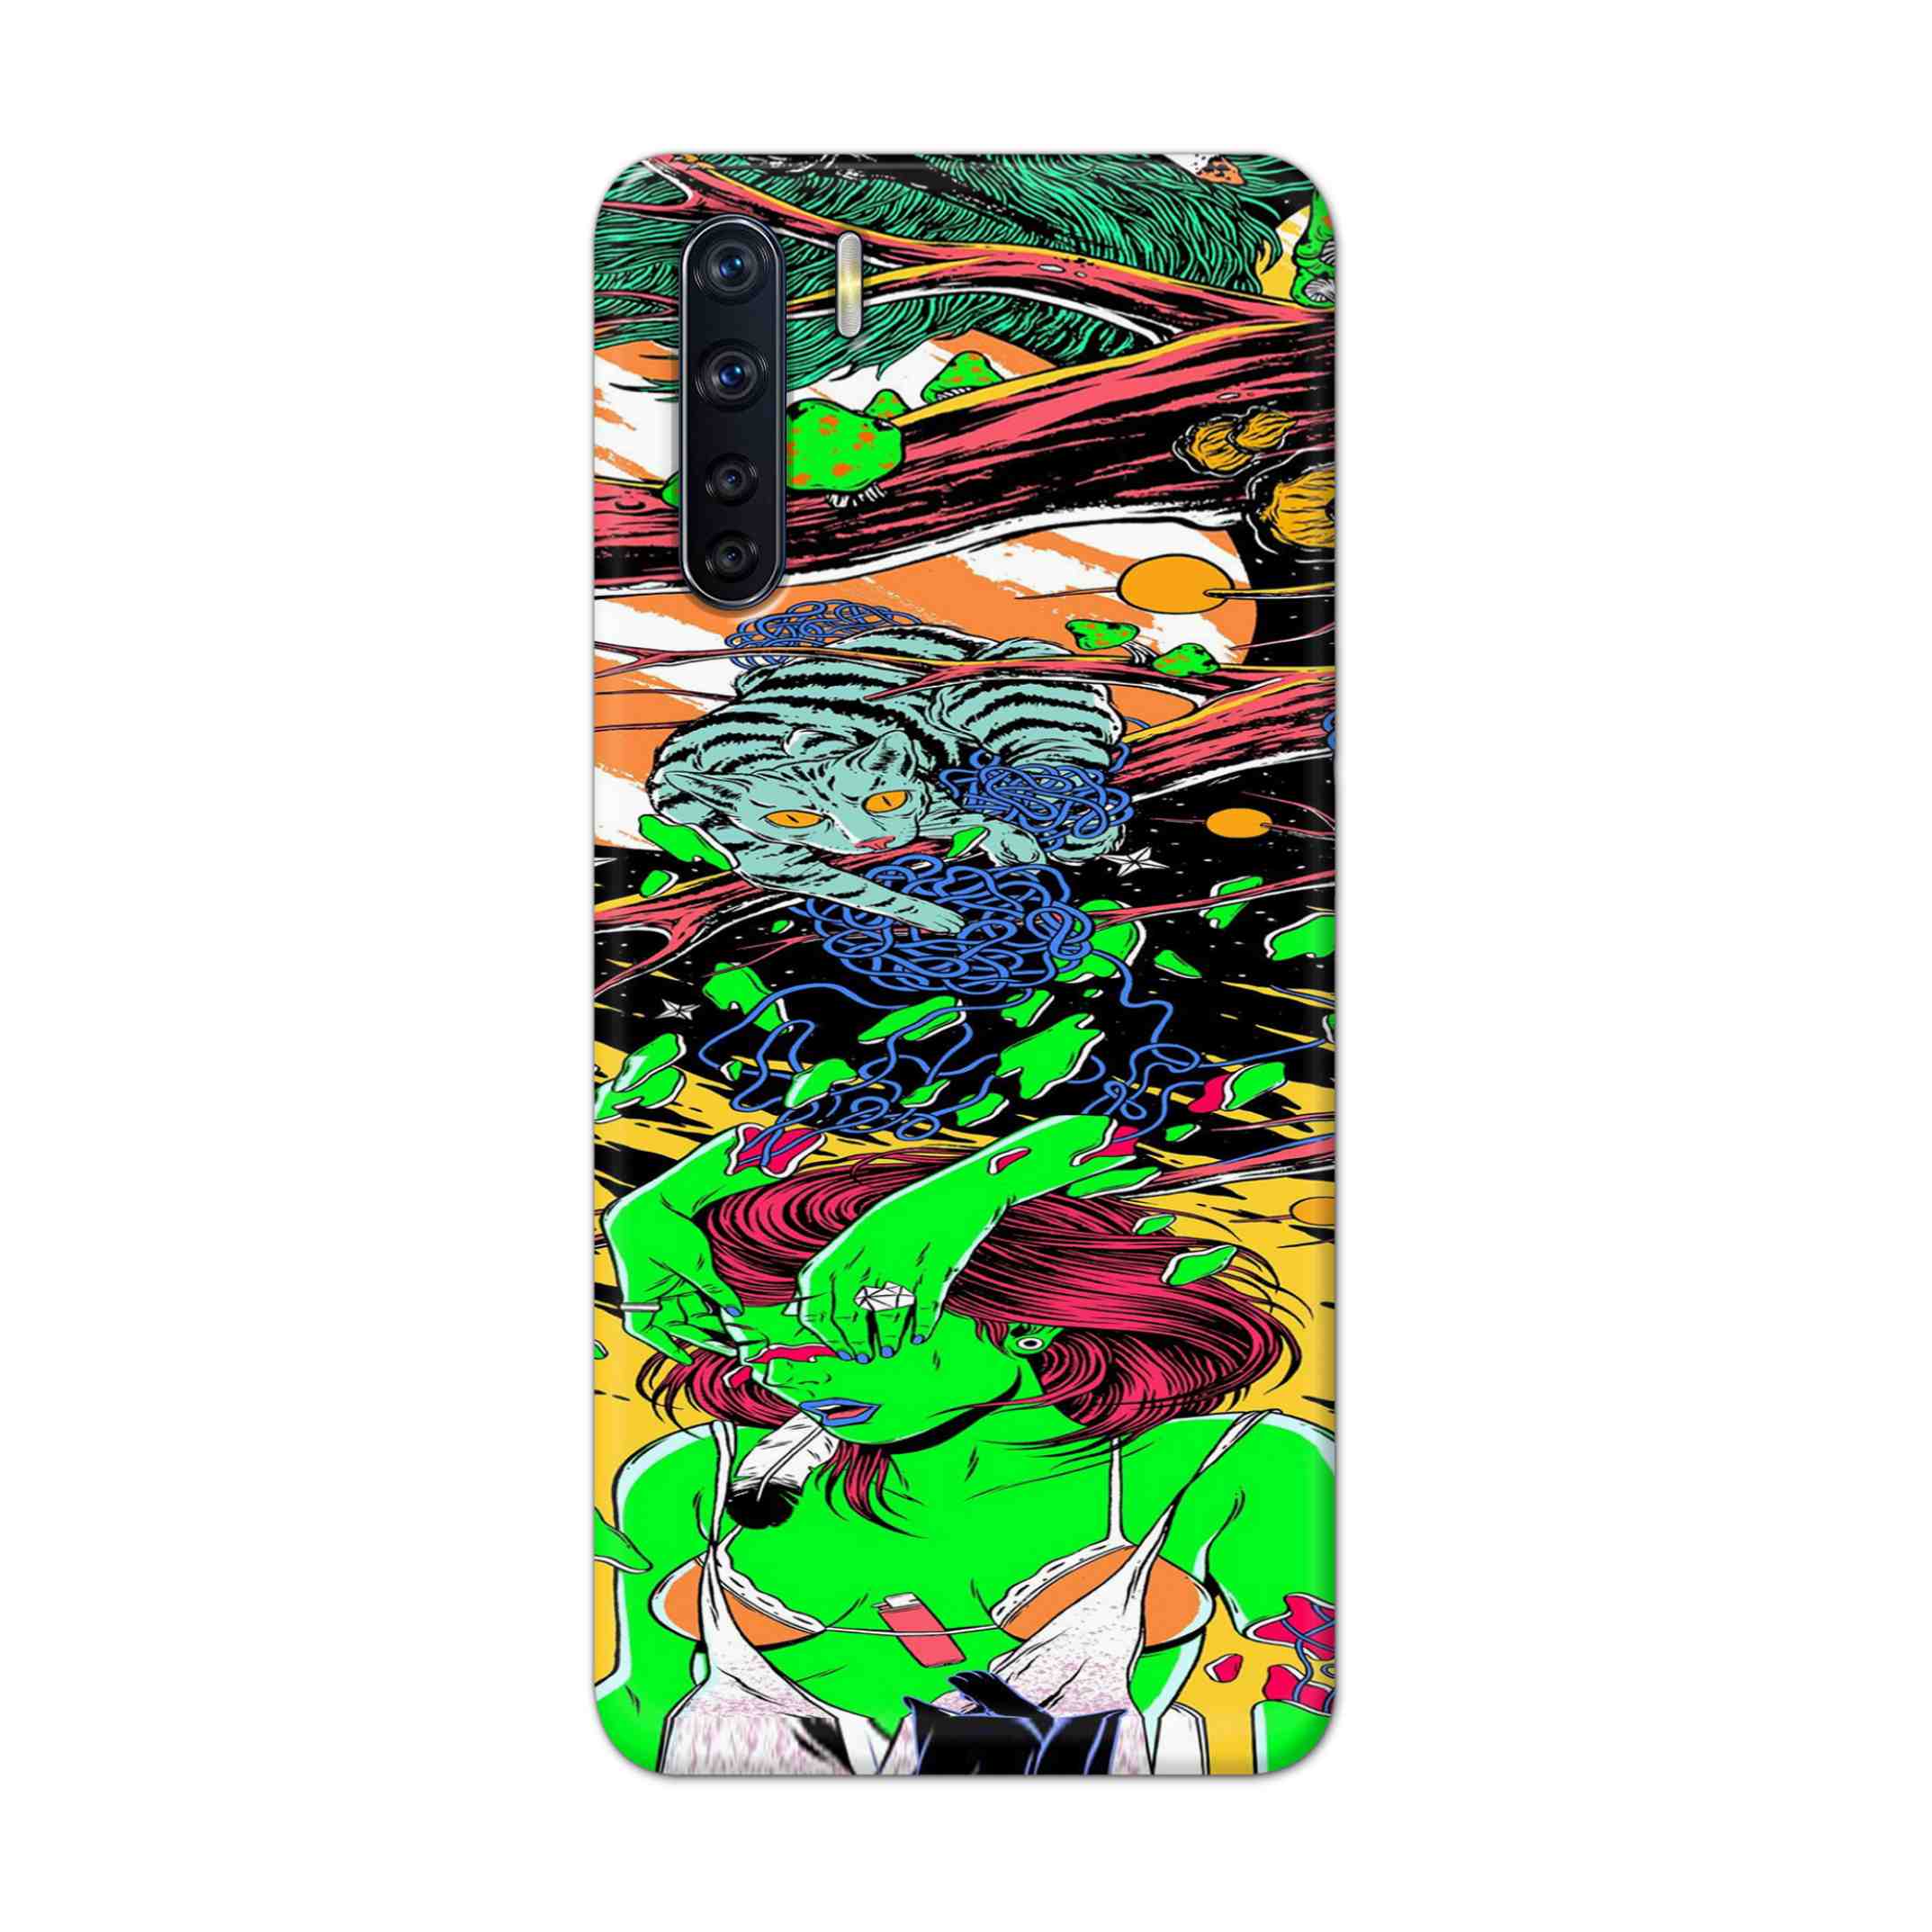 Buy Green Girl Art Hard Back Mobile Phone Case Cover For OPPO F15 Online